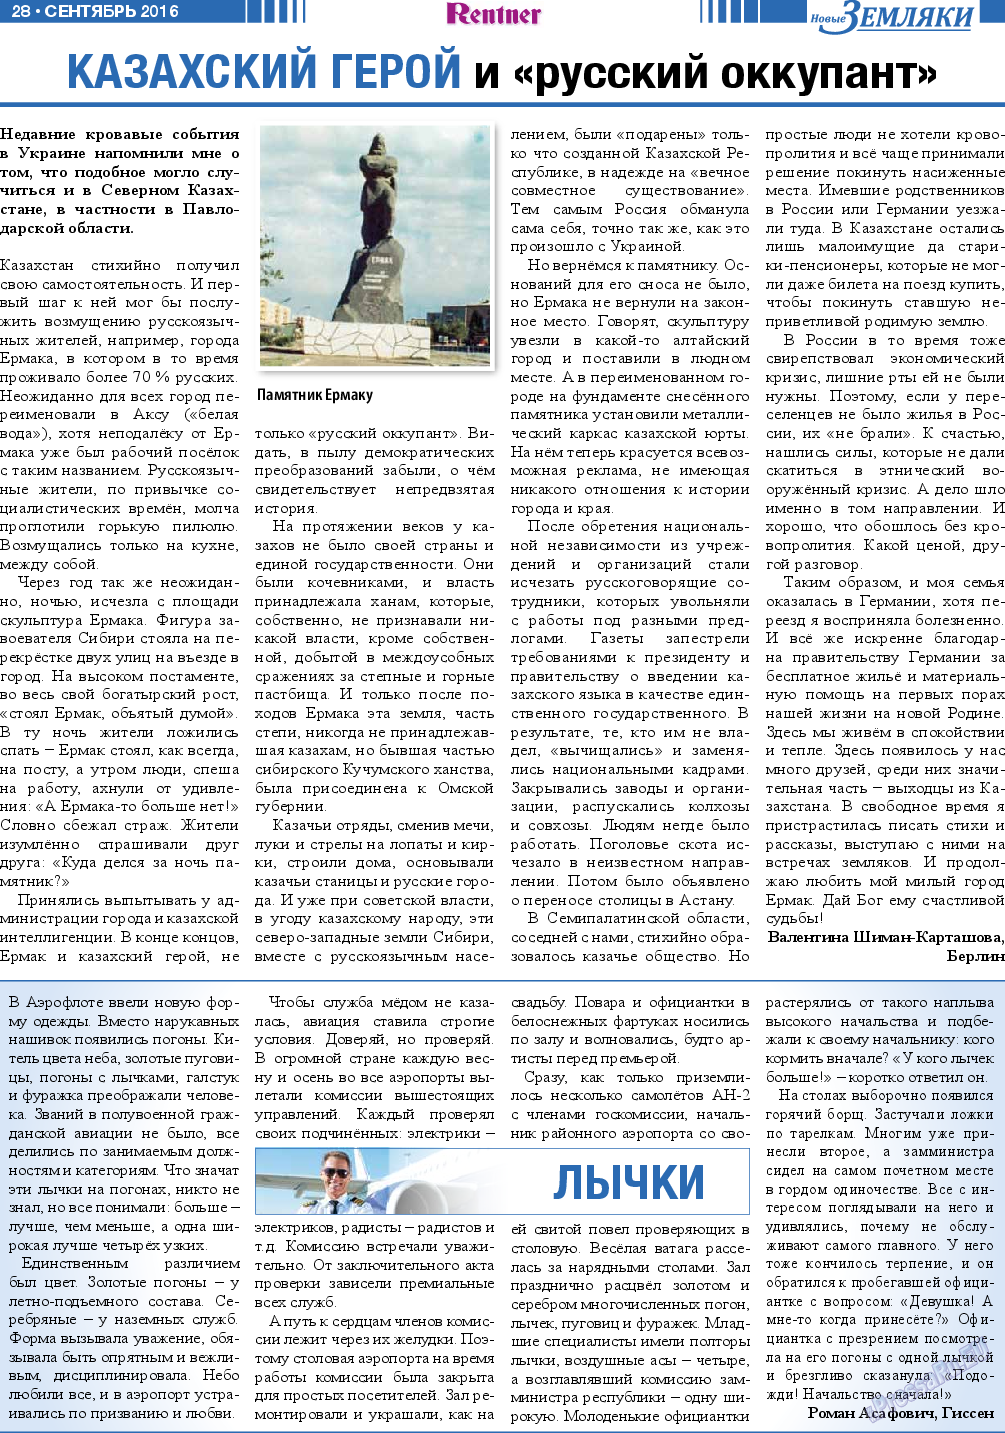 Новые Земляки, газета. 2016 №9 стр.28